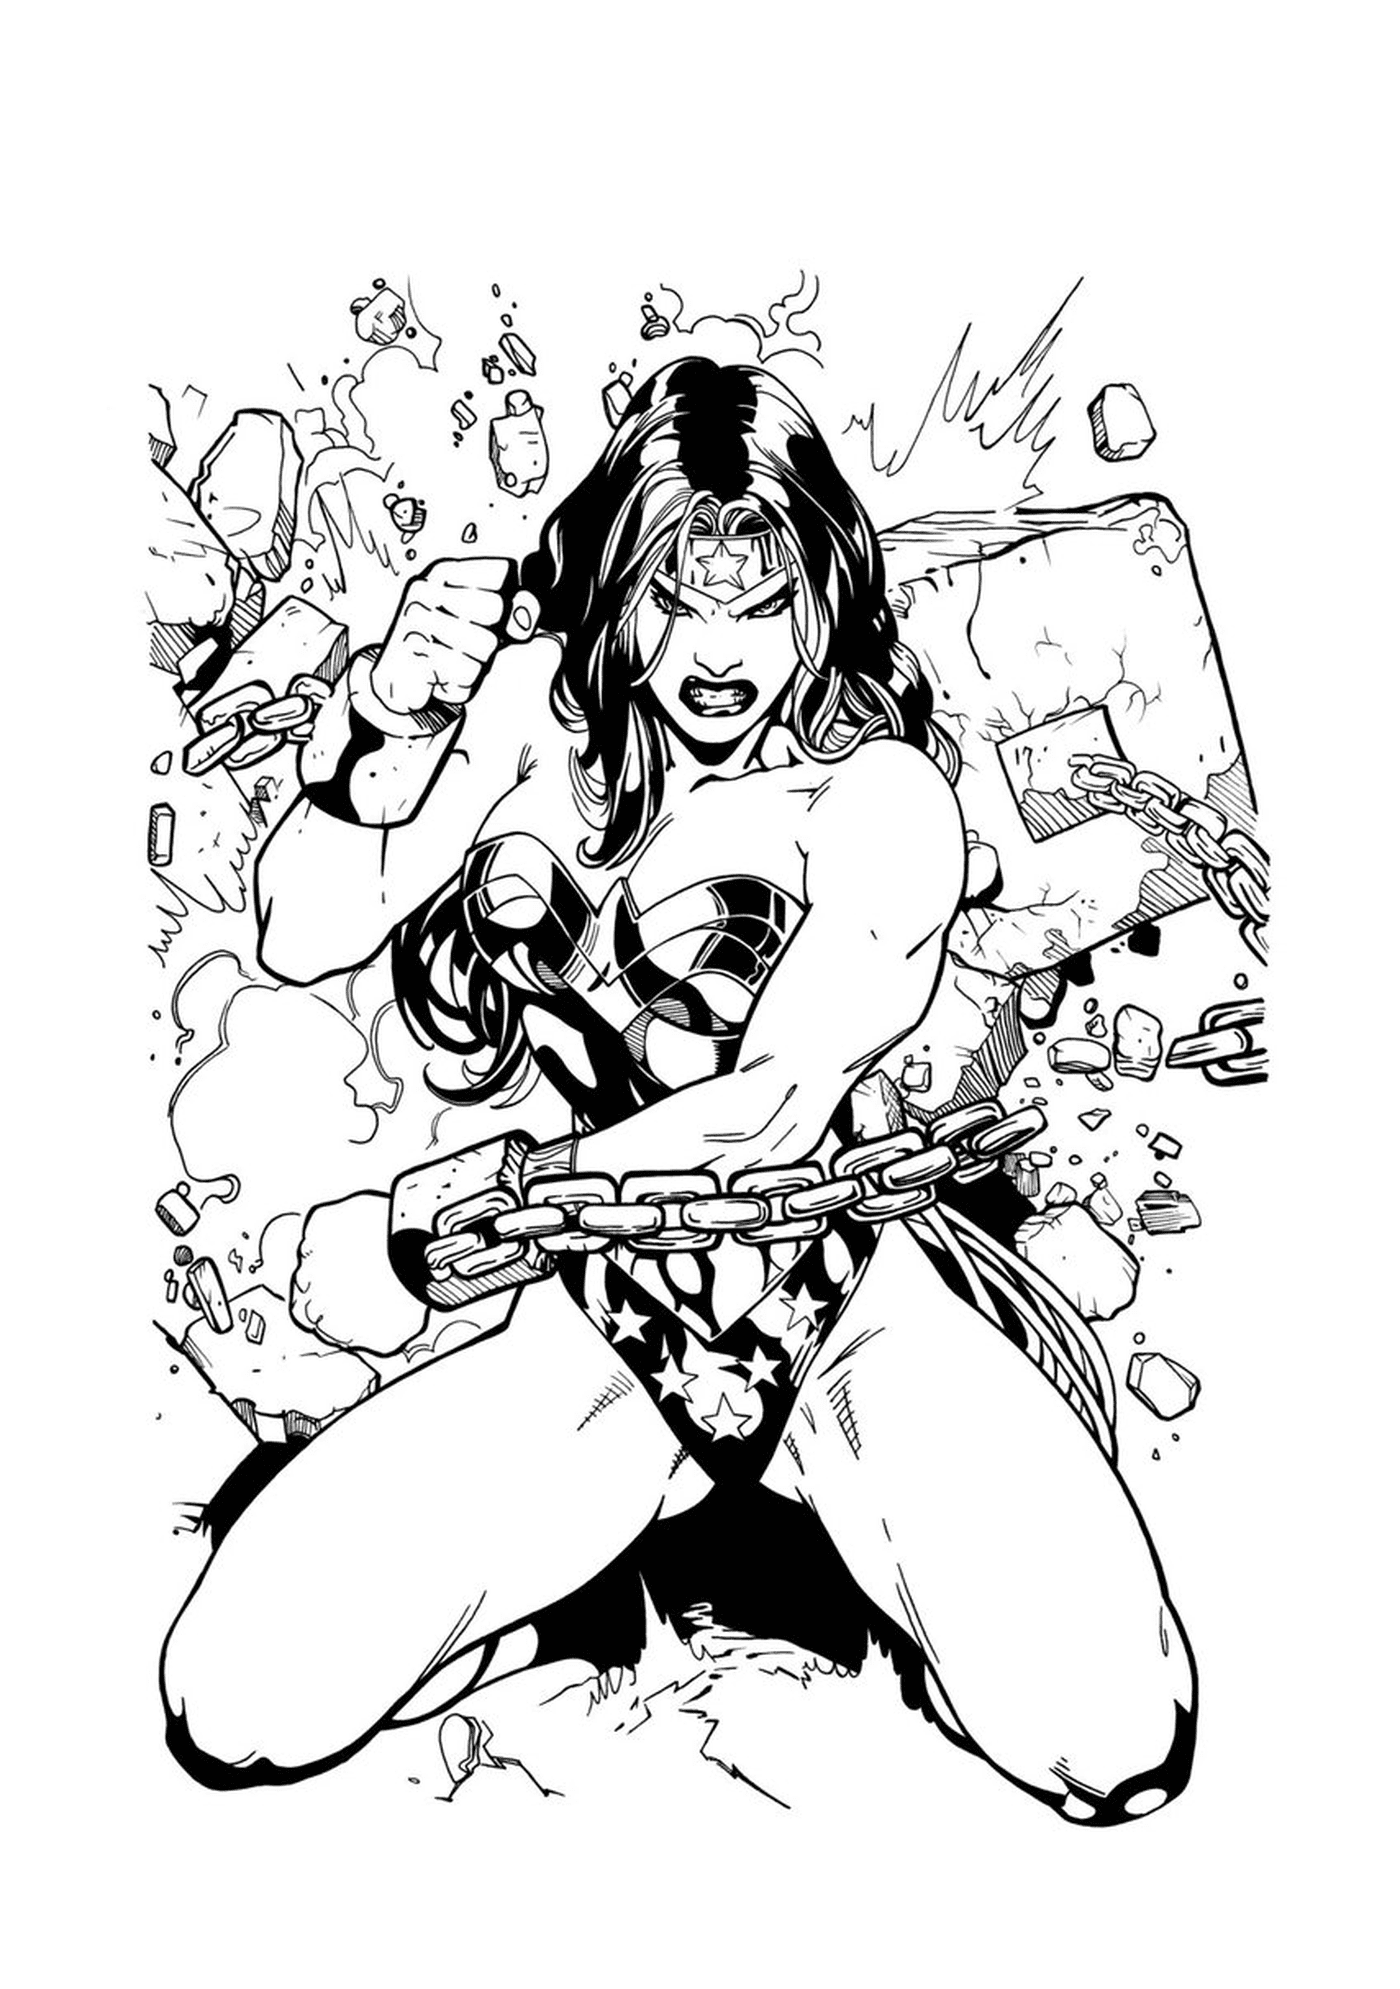  Wonder Woman in ink 